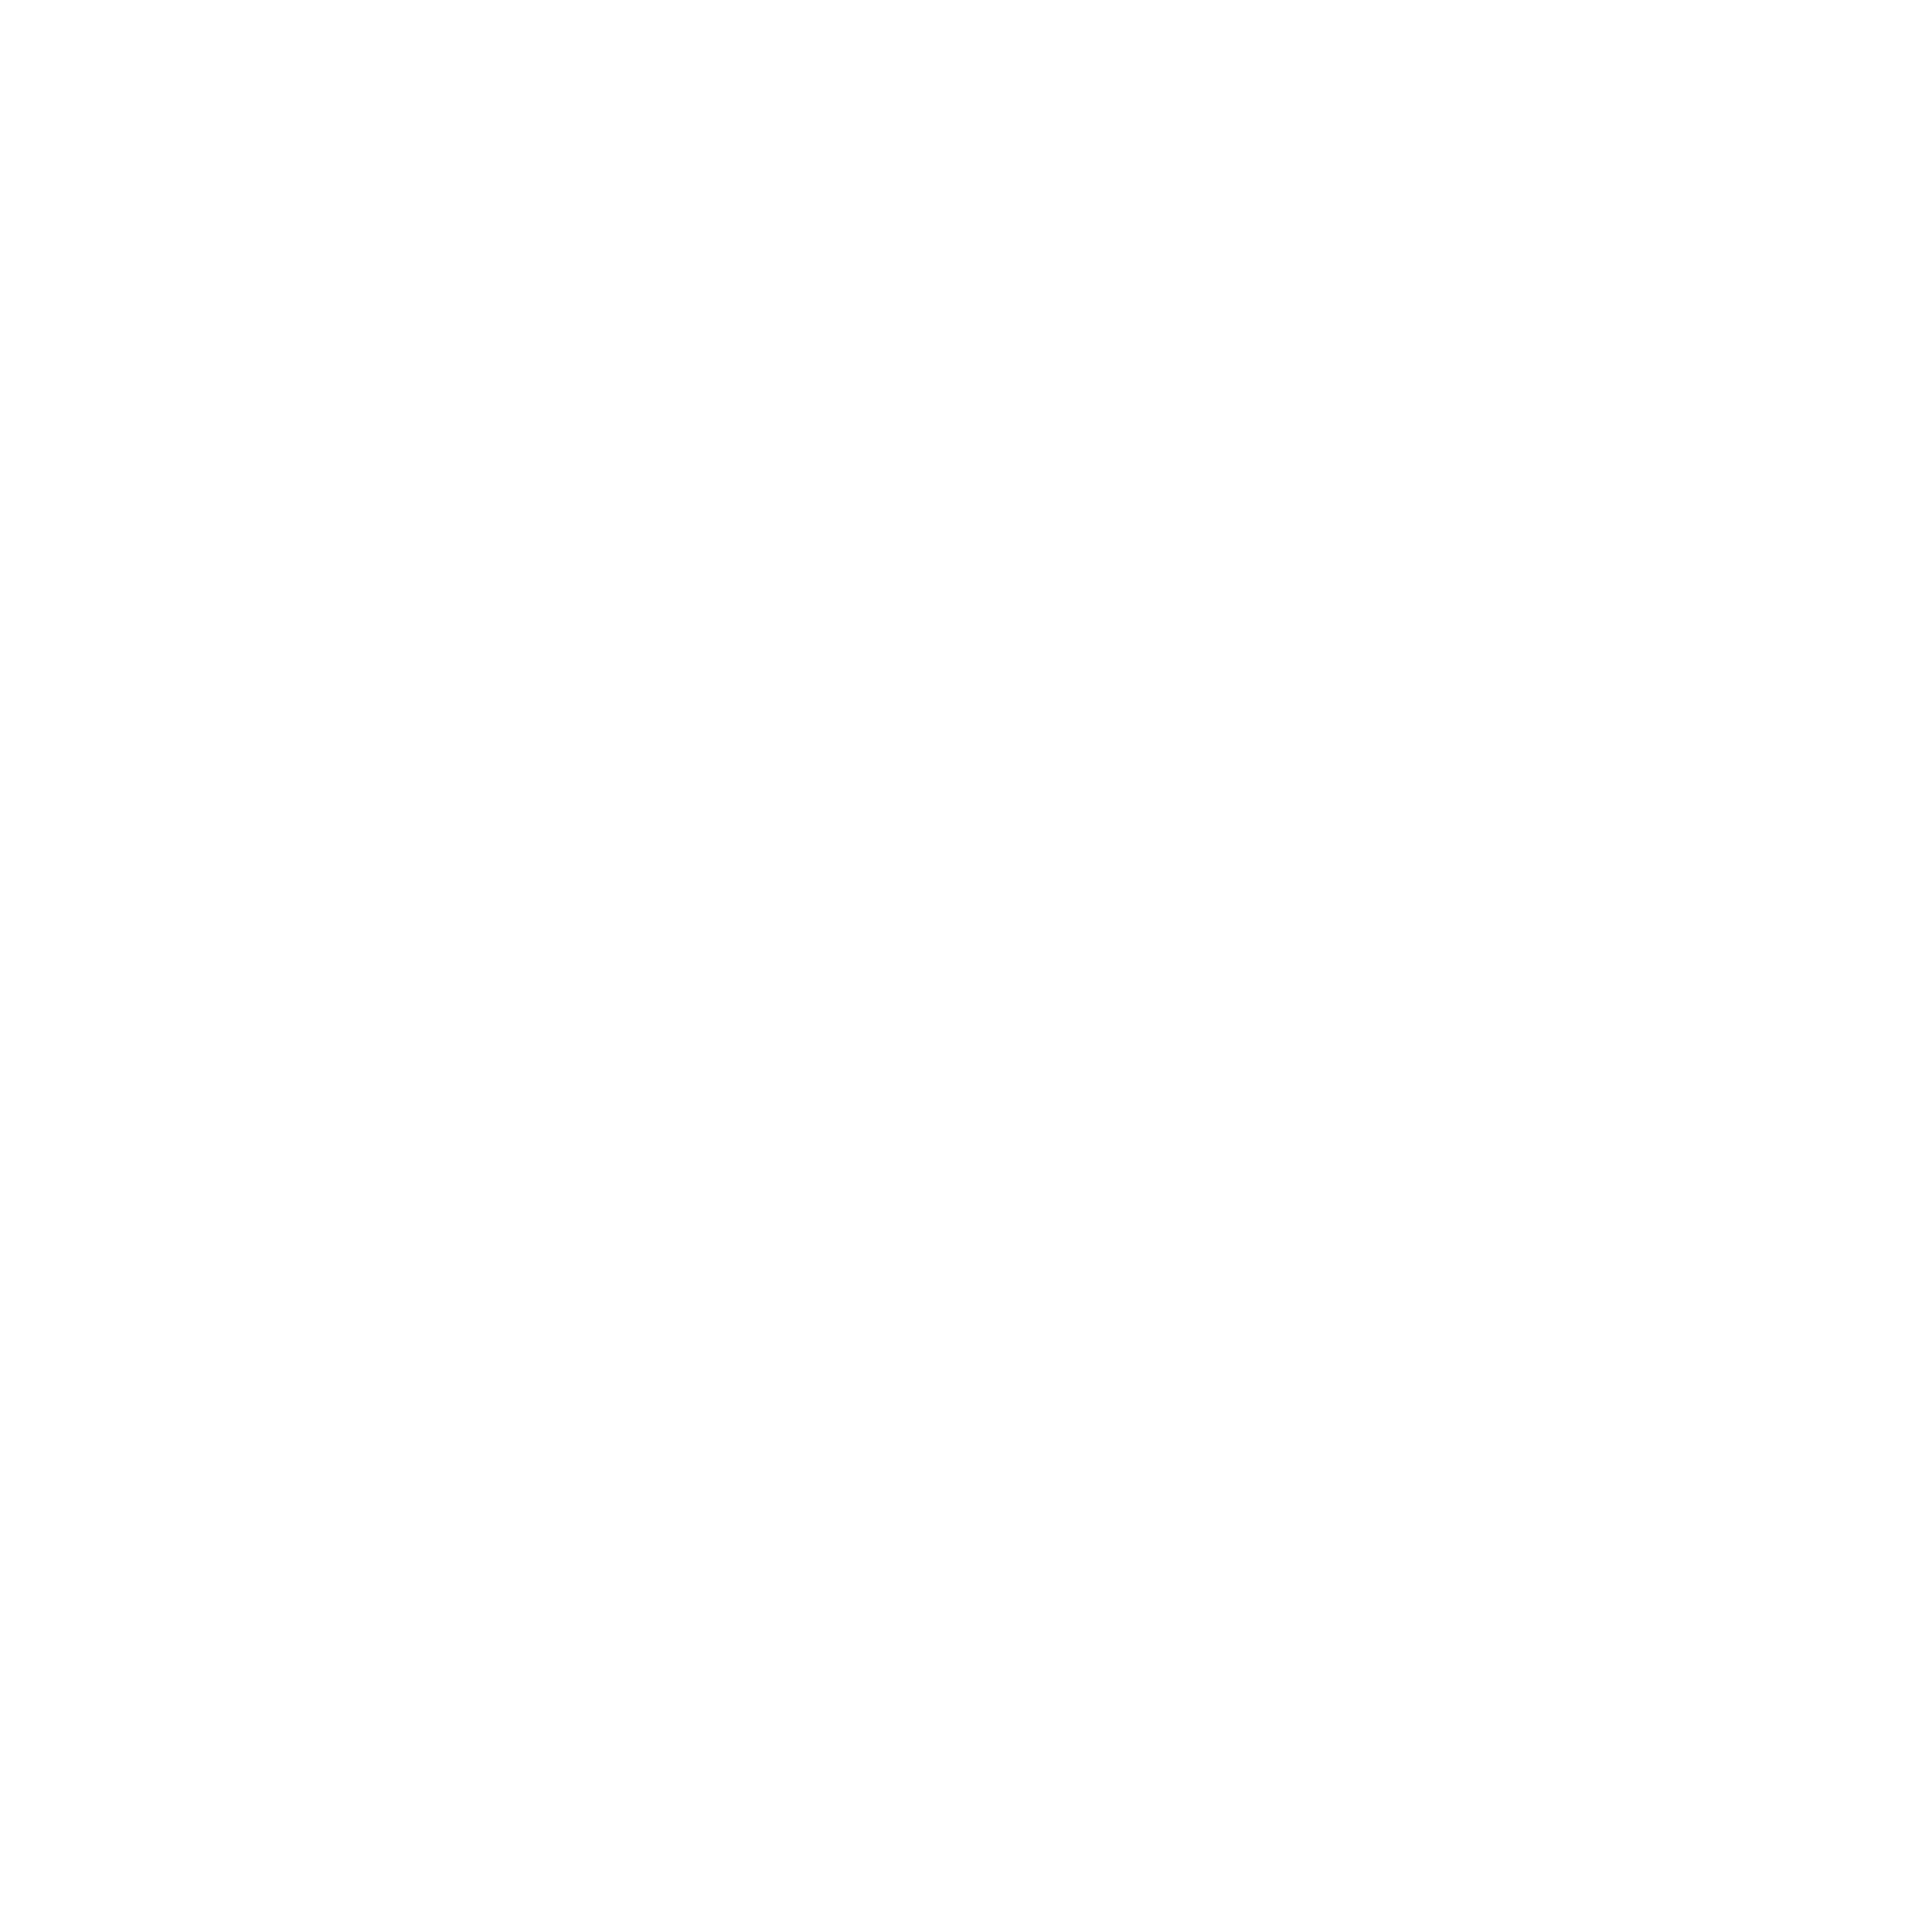 Poulan Logo - Poulan Logo PNG Transparent & SVG Vector - Freebie Supply